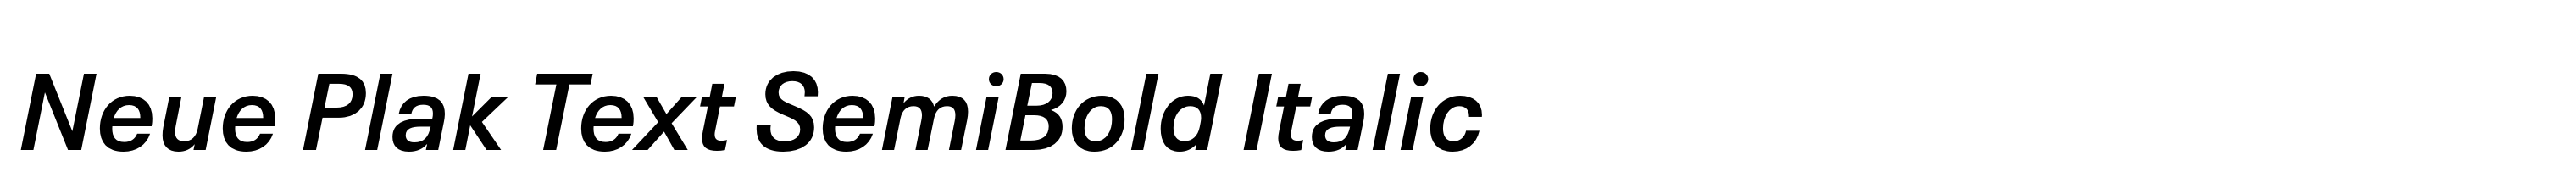 Neue Plak Text SemiBold Italic